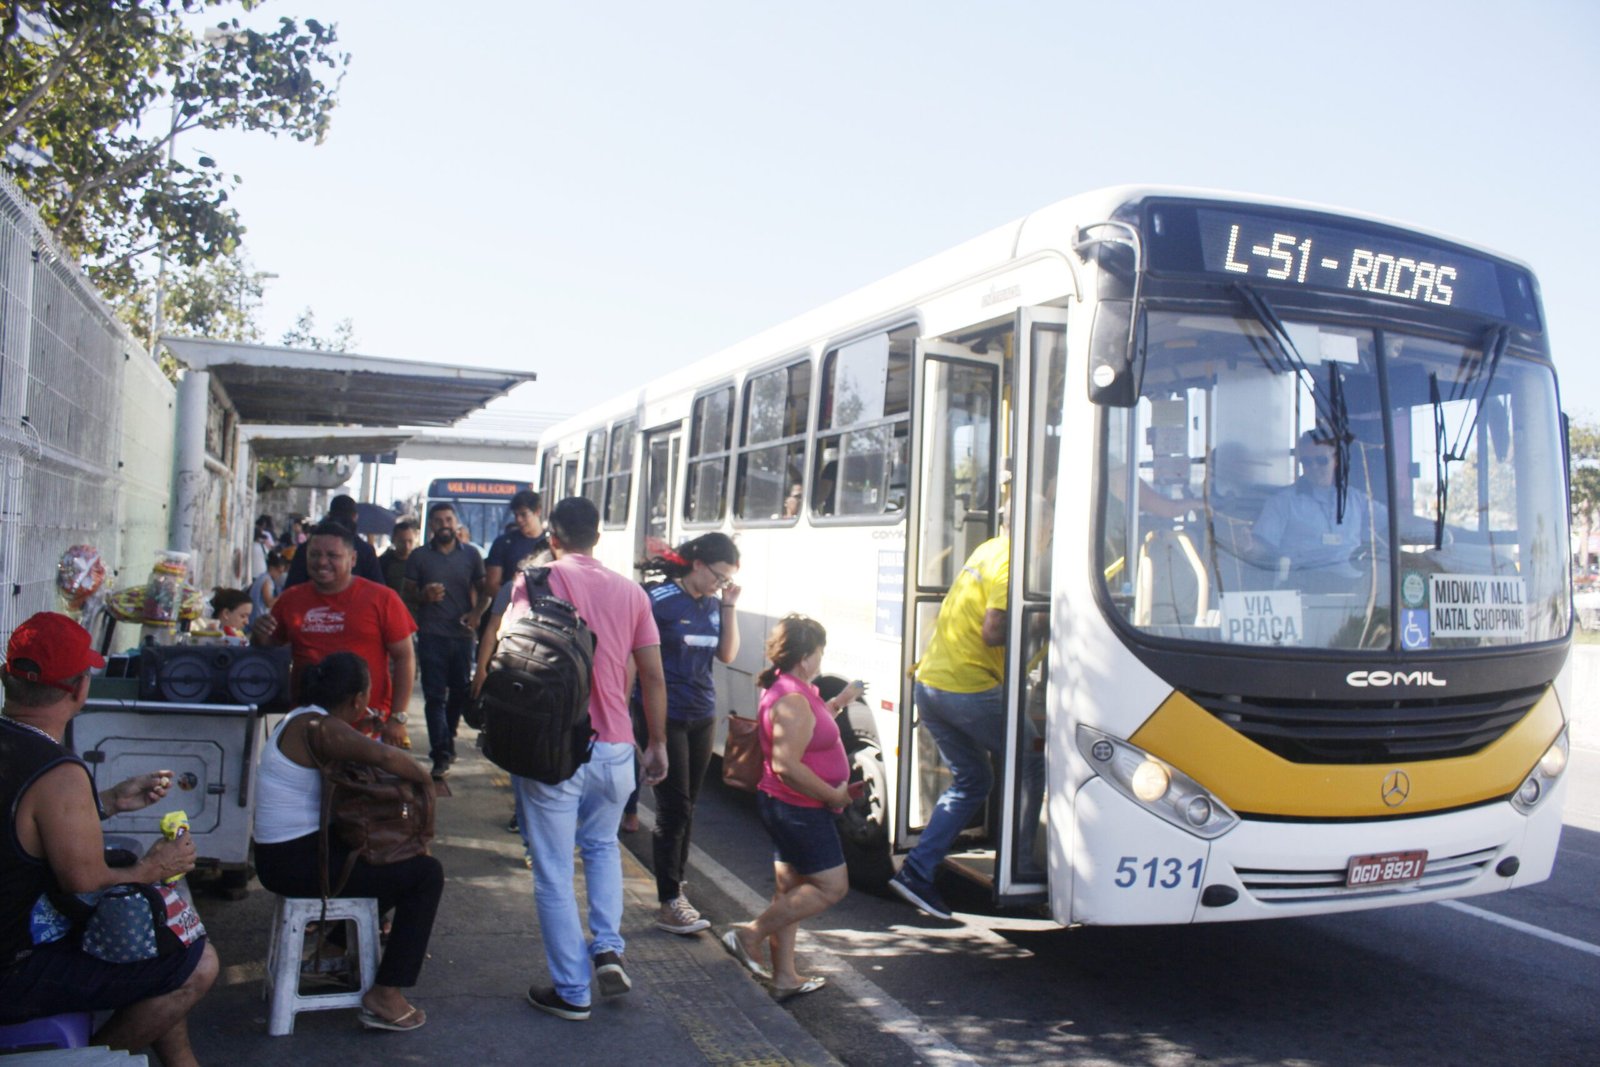 Senado recorre de decisão do STF sobre transporte gratuito em eleições -  Portal Diário do RN